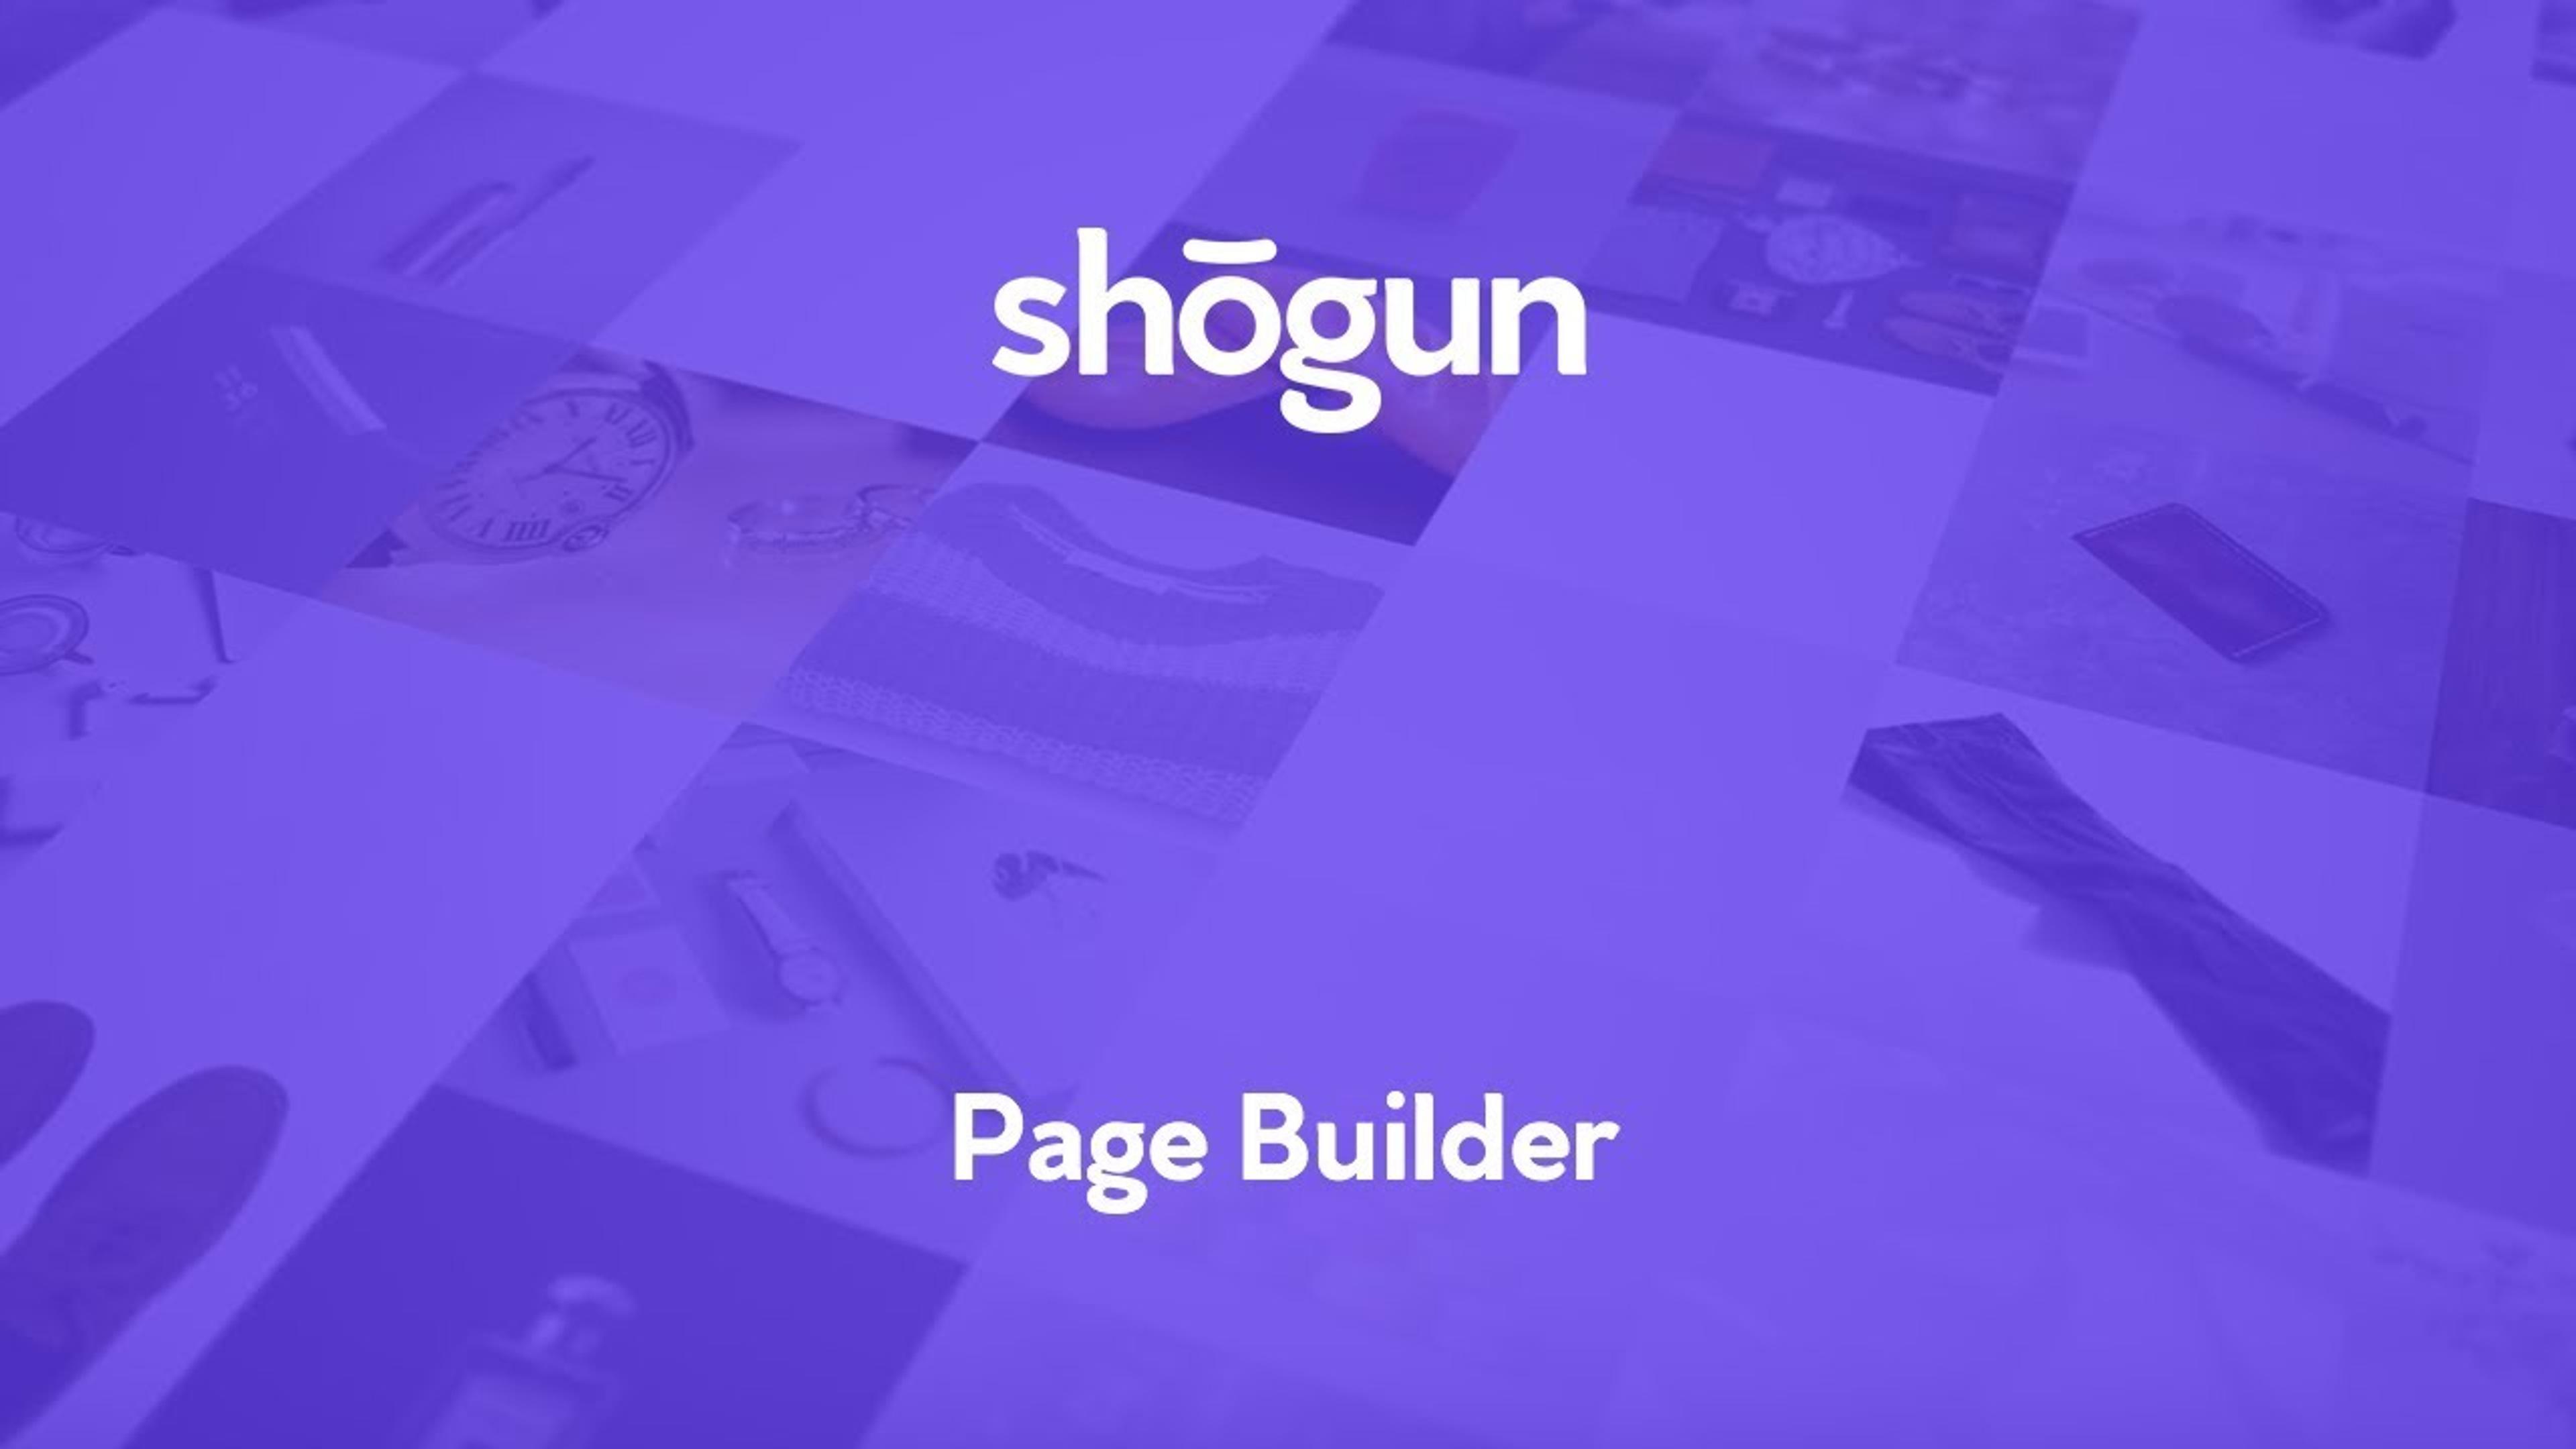 shogun page builder